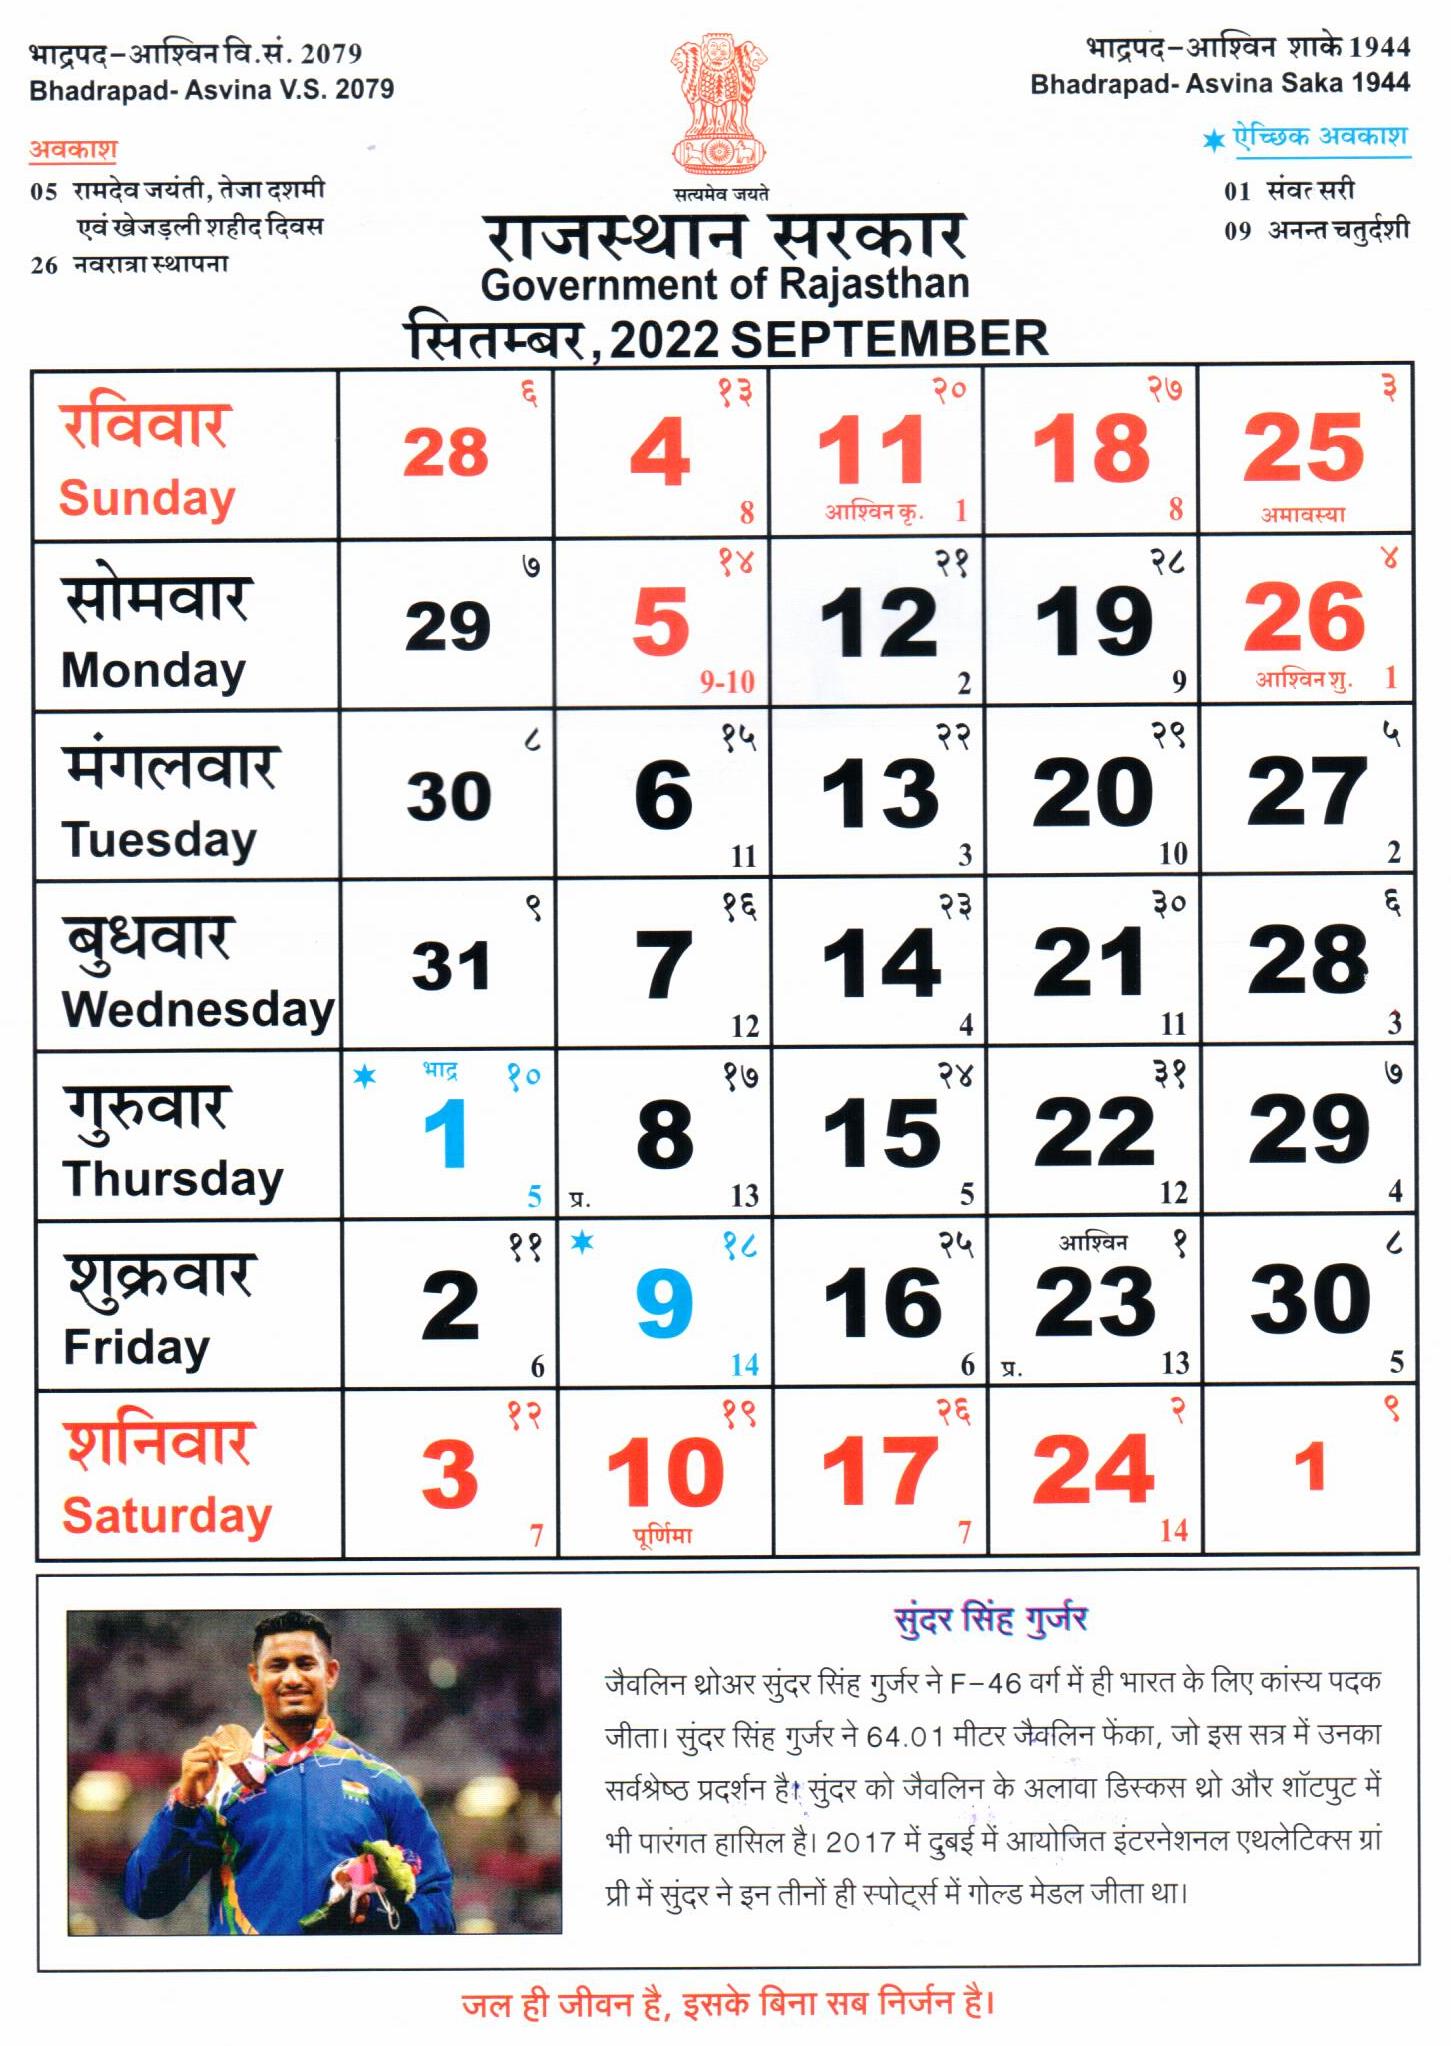 Rajasthan Govt official calendar 2022 download